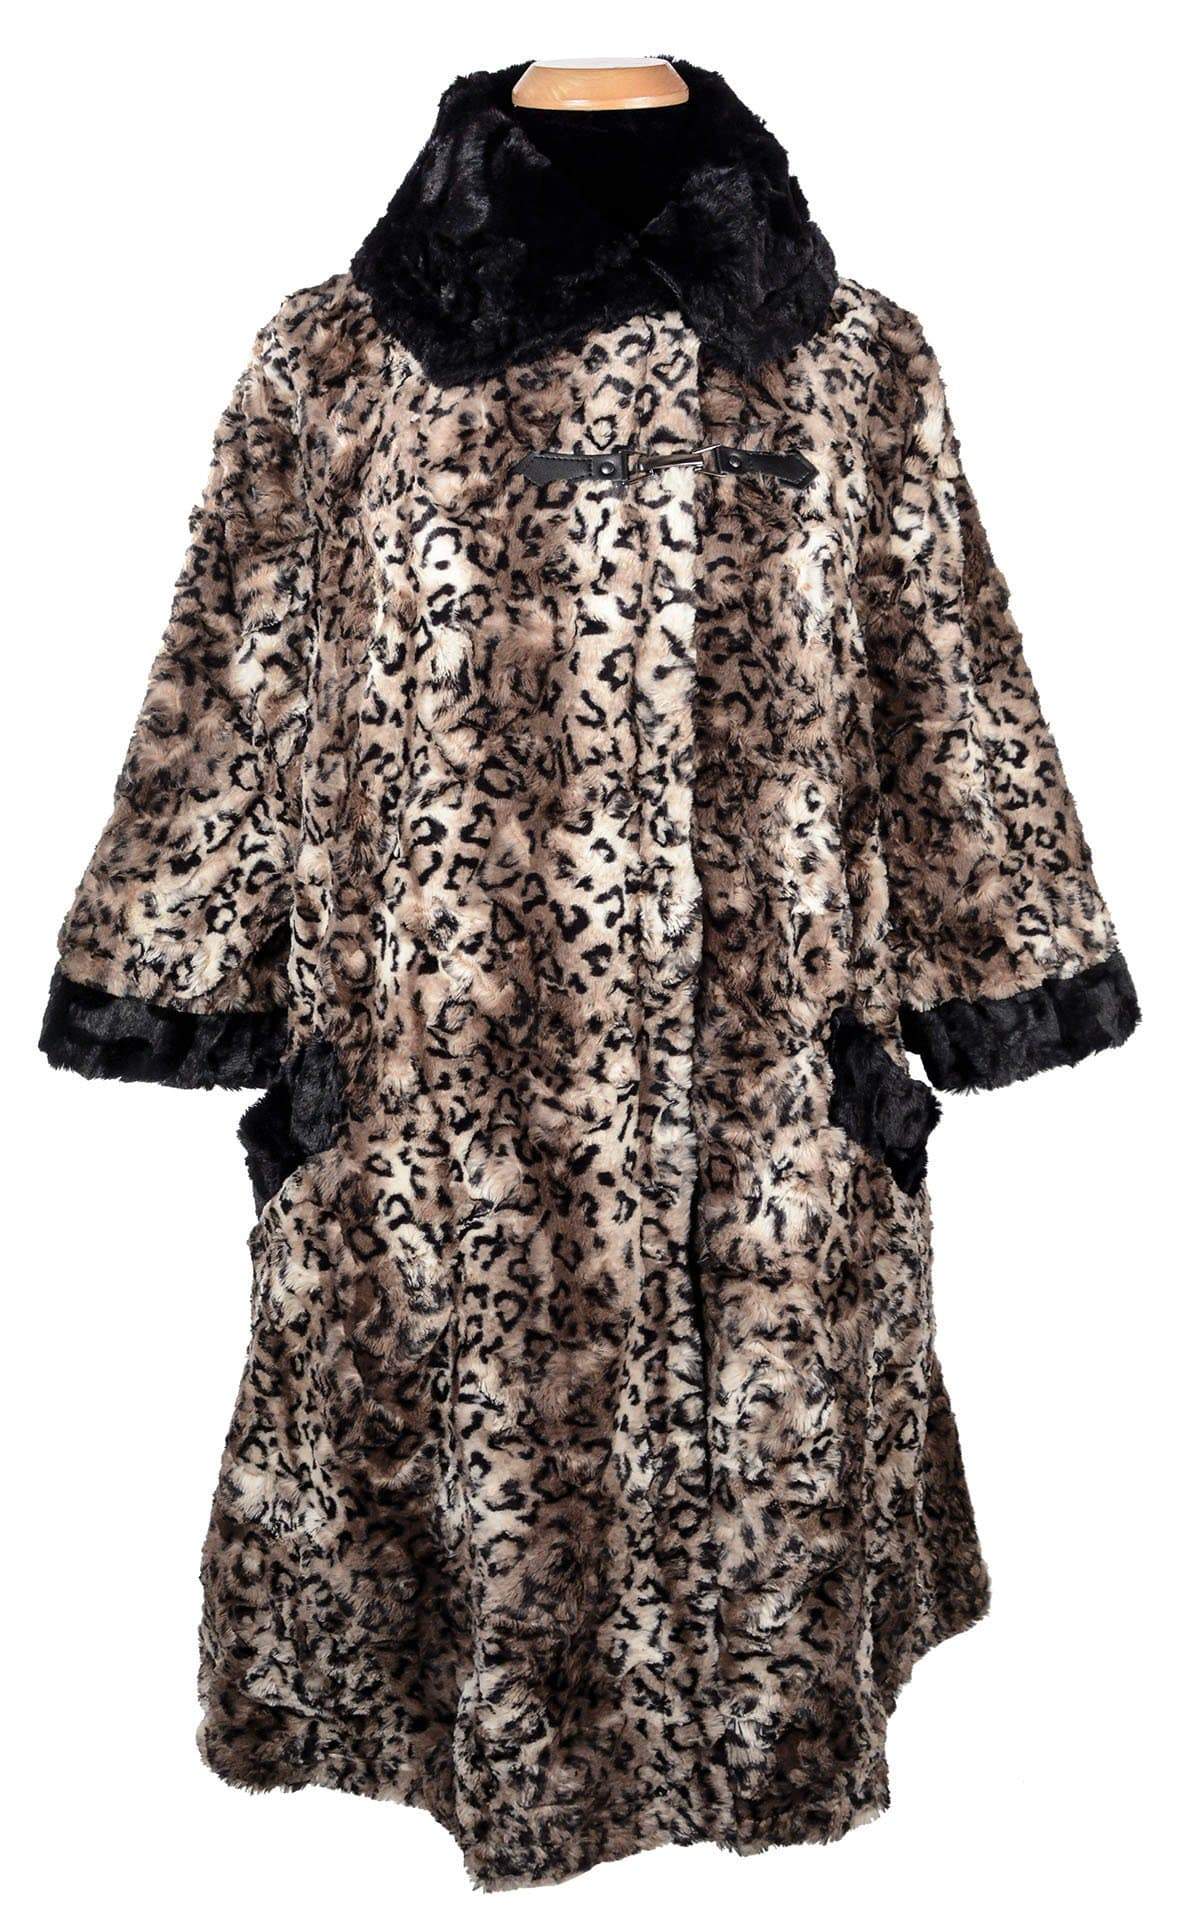 Crawford Coat - Luxury Faux Fur in Carpathian Lynx with Cuddly Fur in Black (One Medium Left!)